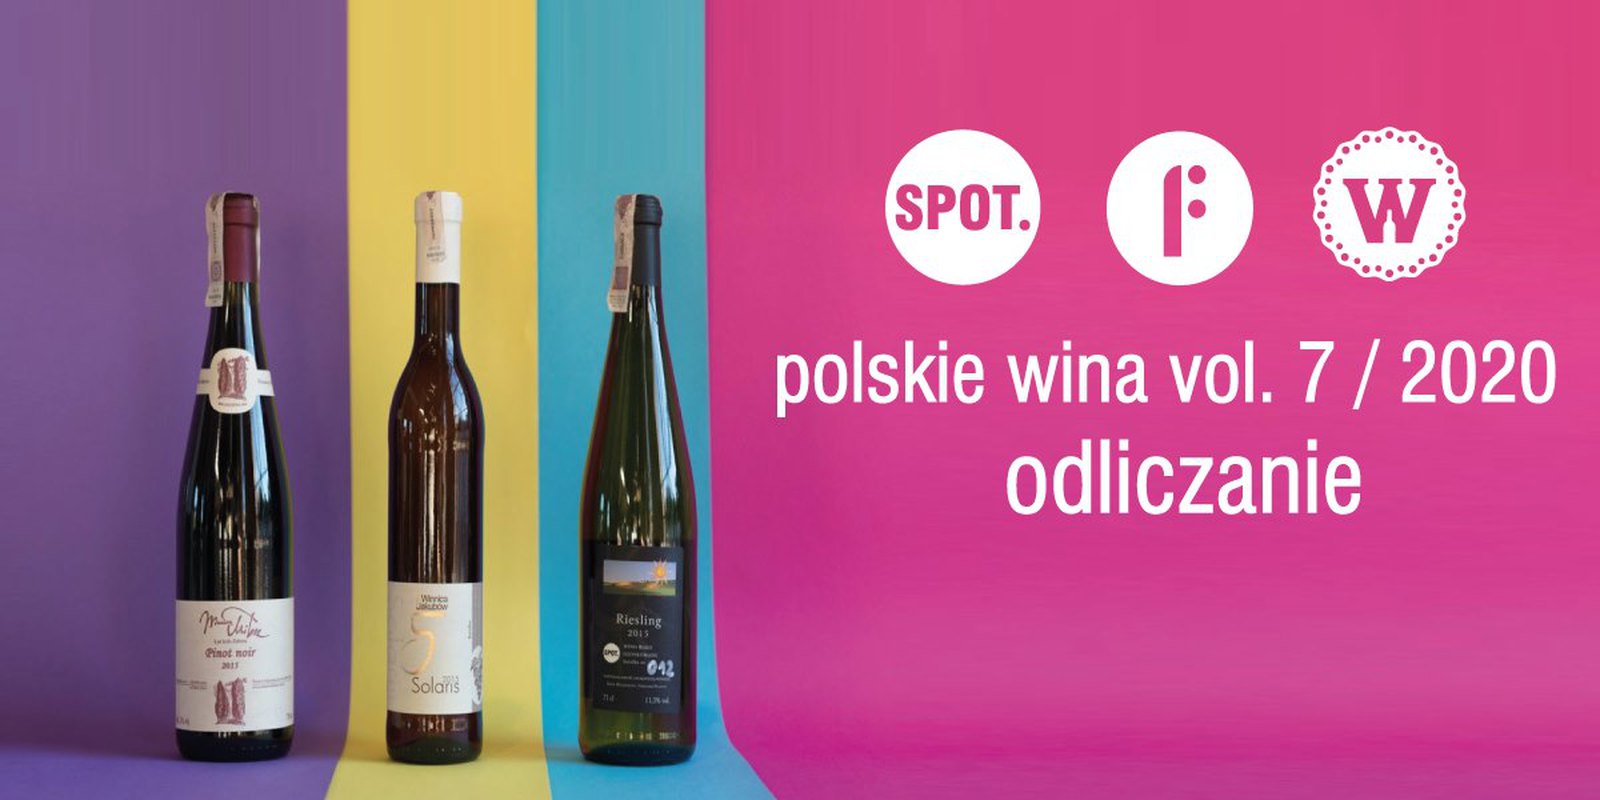 Odliczanie _ polskie wina vol. 7 / 2020